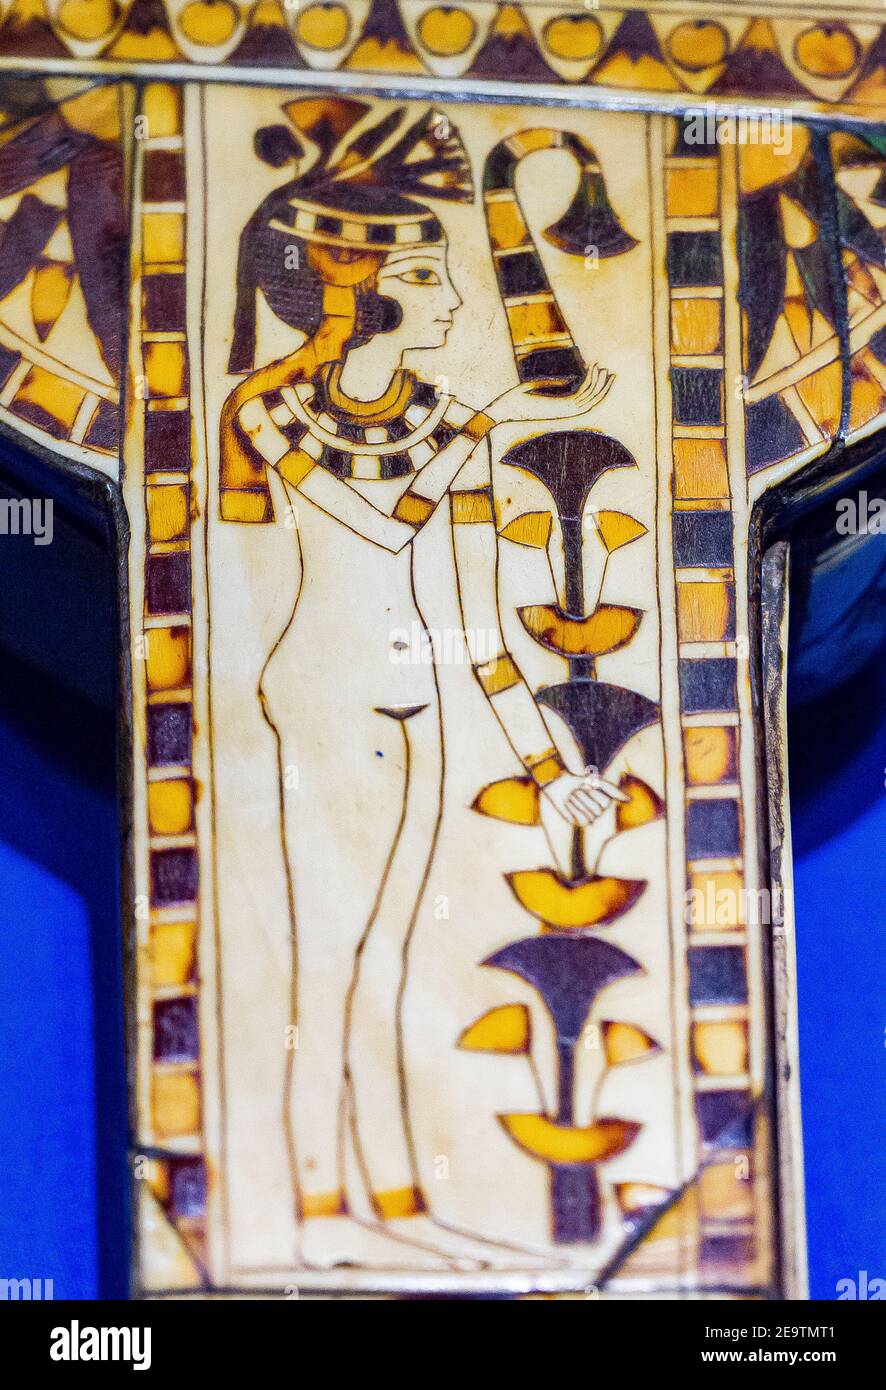 Ägypten, Kairo, Ägyptisches Museum, Spiegelgehäuse der Königin Henouttaouy, gefunden in der königlichen Cachette von Deir el Bahari. Dynastie 21. Holz und Elfenbein. Stockfoto